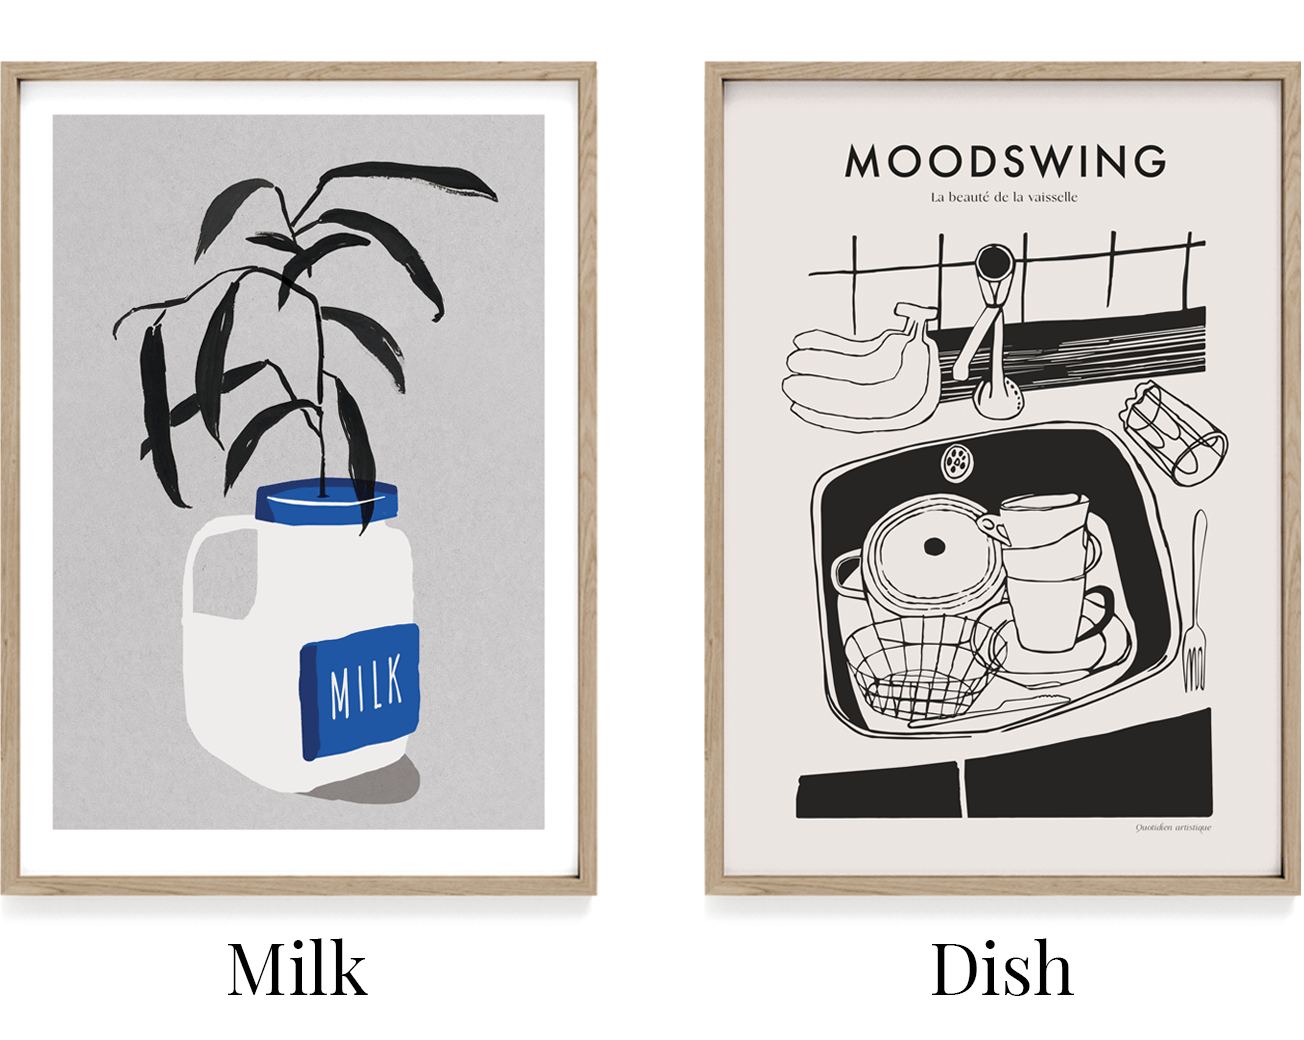 Køkkenplakat. Morgenbord plakat. Plakt med mælk. Hverdagsplakat. Plakat med print på begge sider. Moodswing postershop